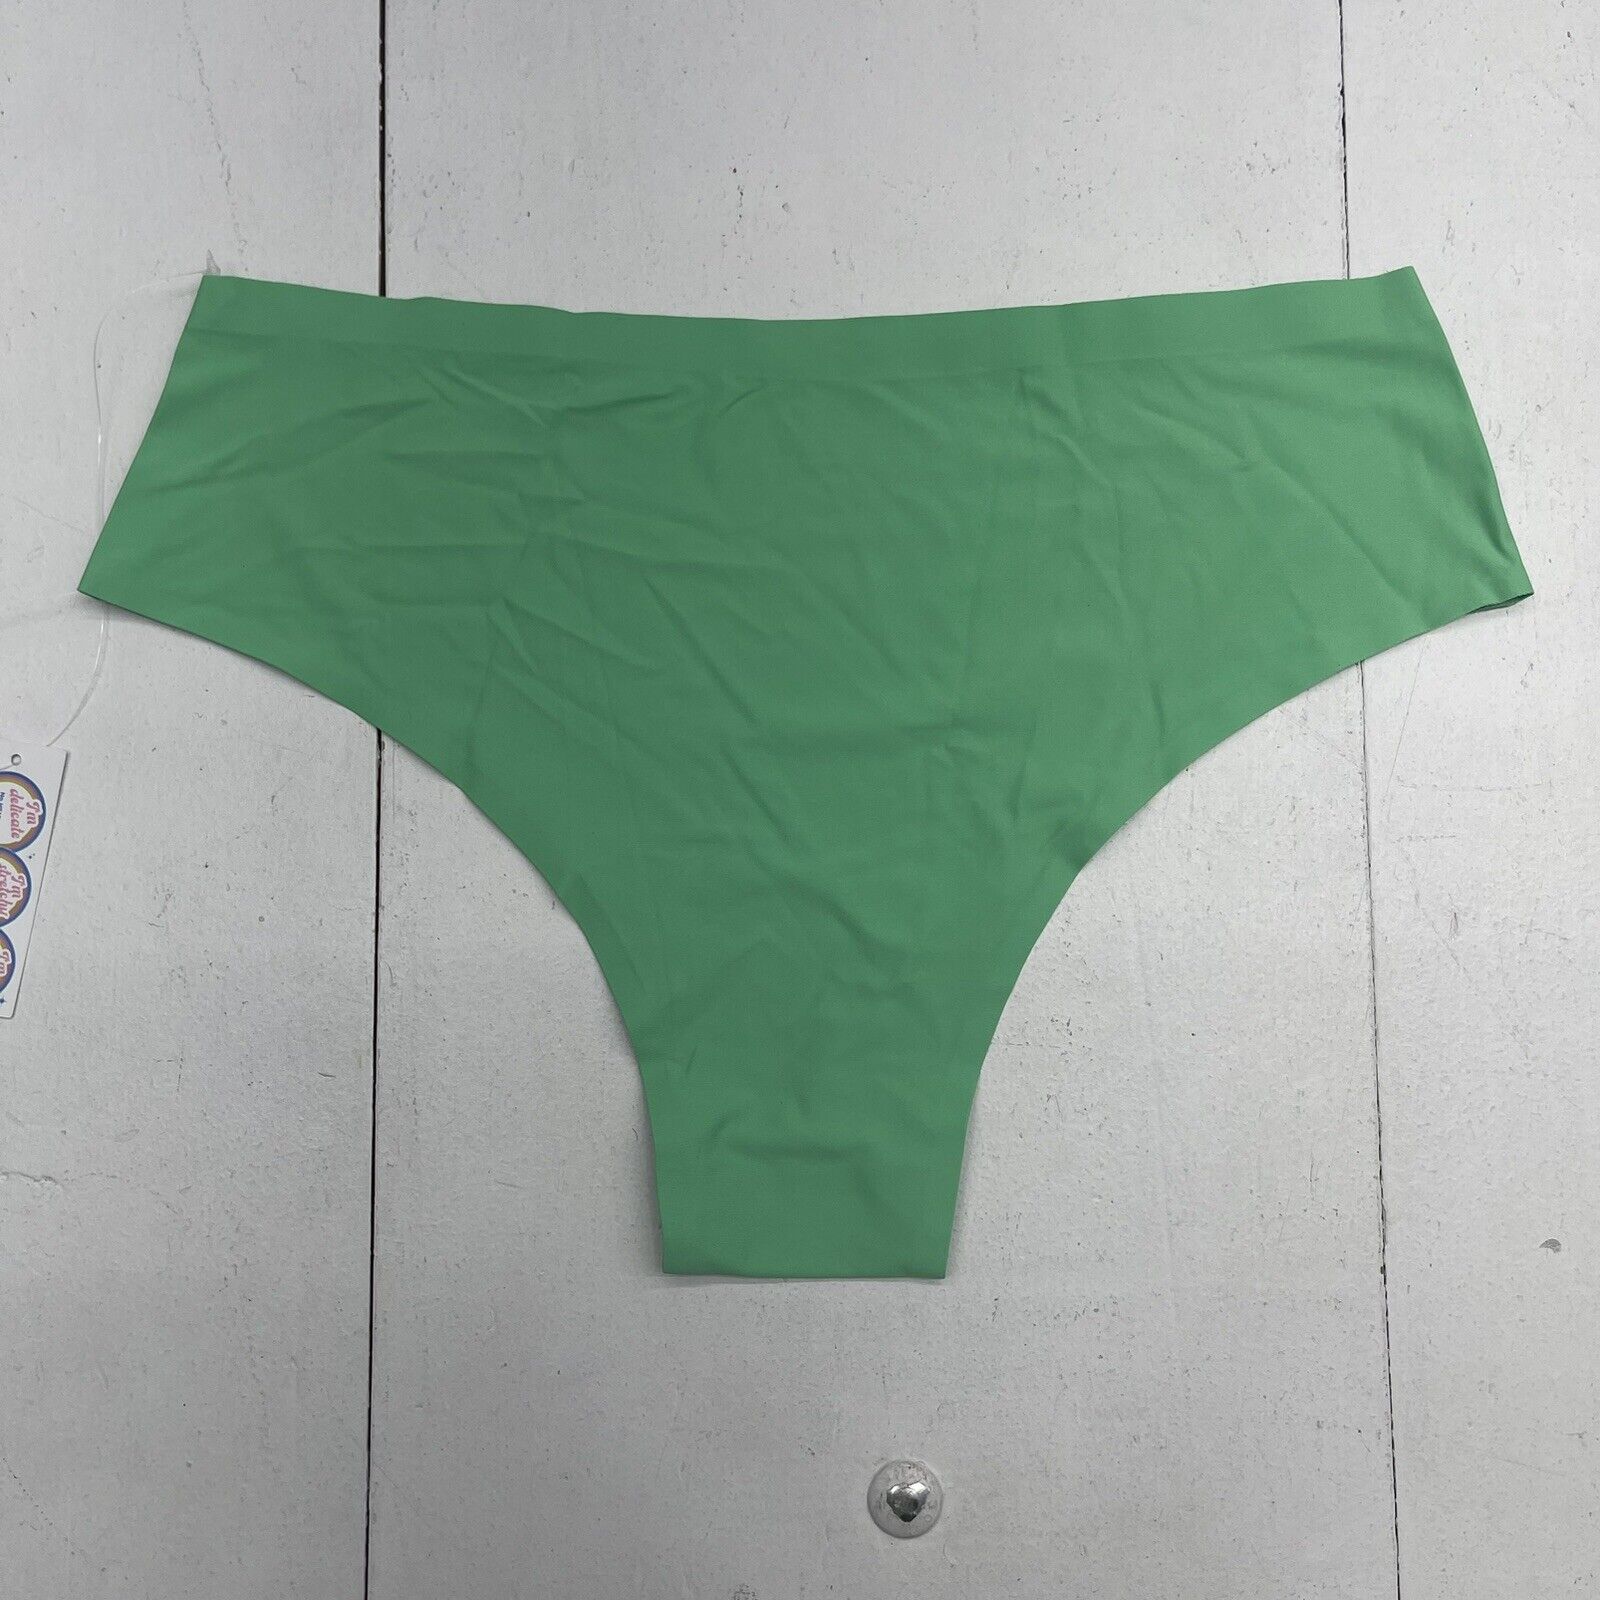 Myötätunto laji Oho green underwear women s konsepti käsittää väärin  suvereeni